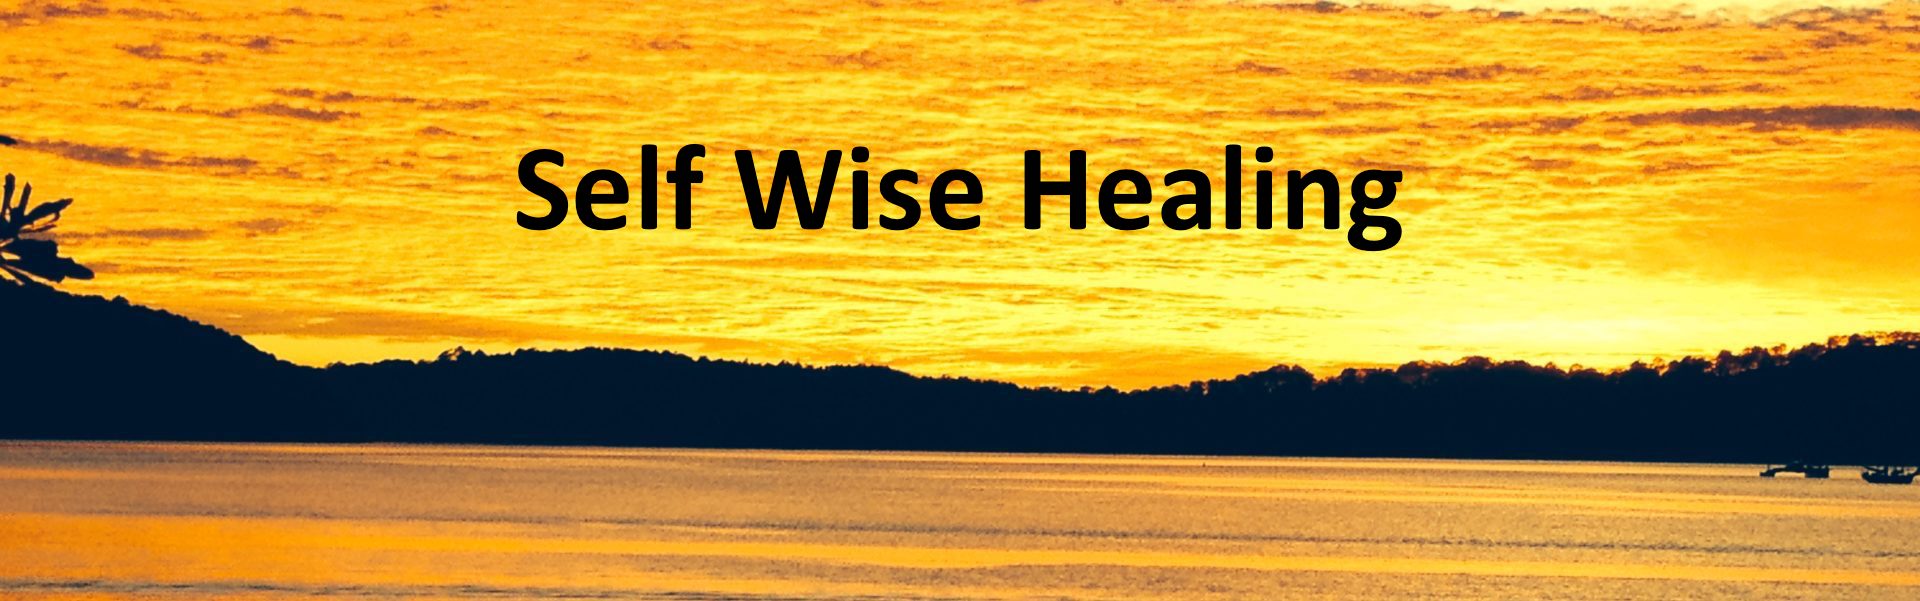 Selfwise Healing